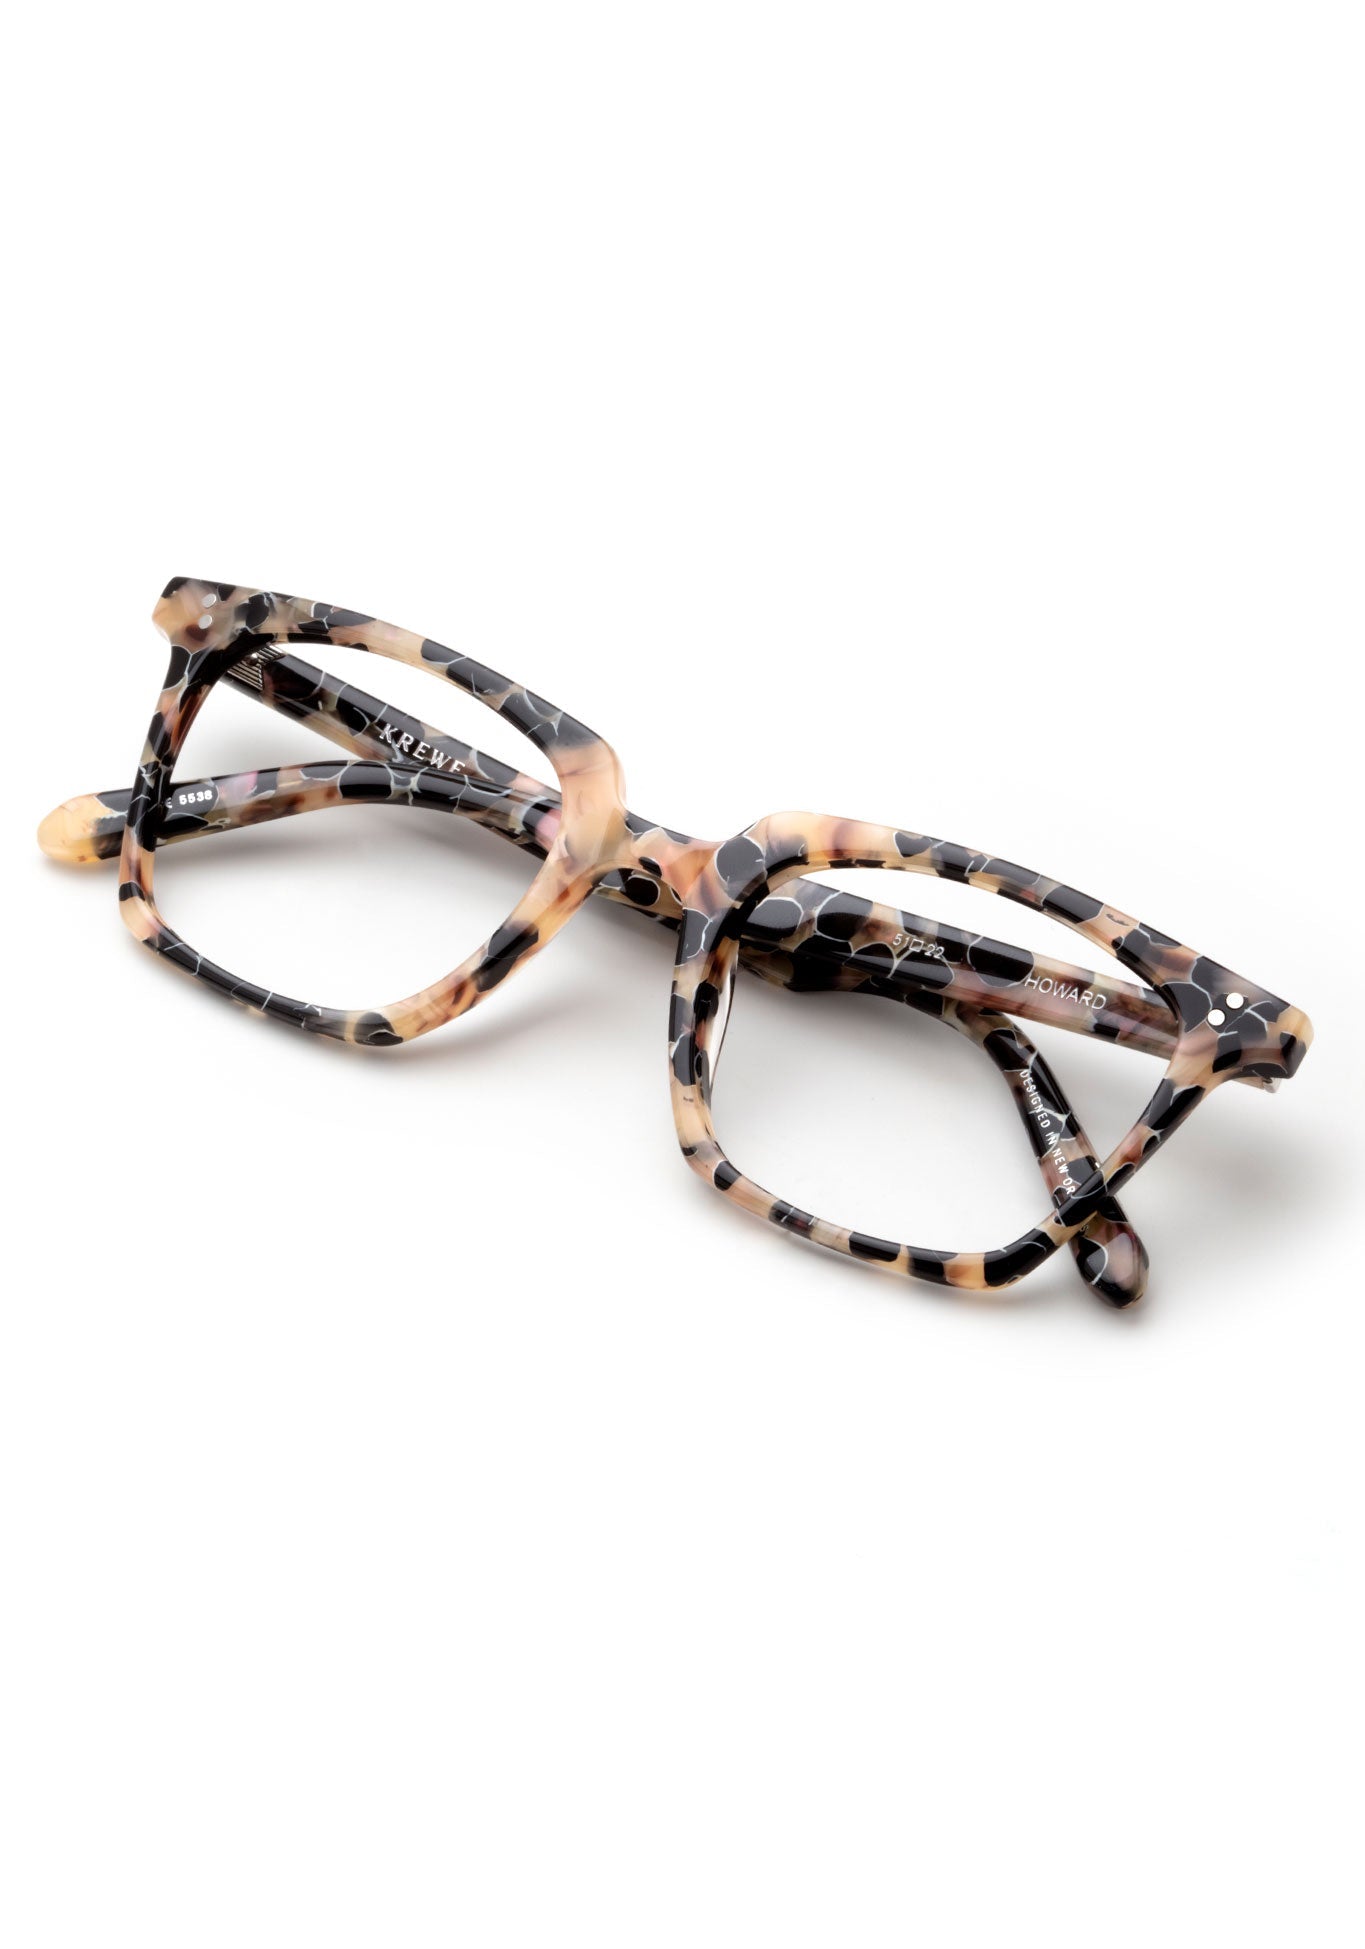 KREWE HOWARD | Crema Handcrafted, luxury brown acetate eyeglasses